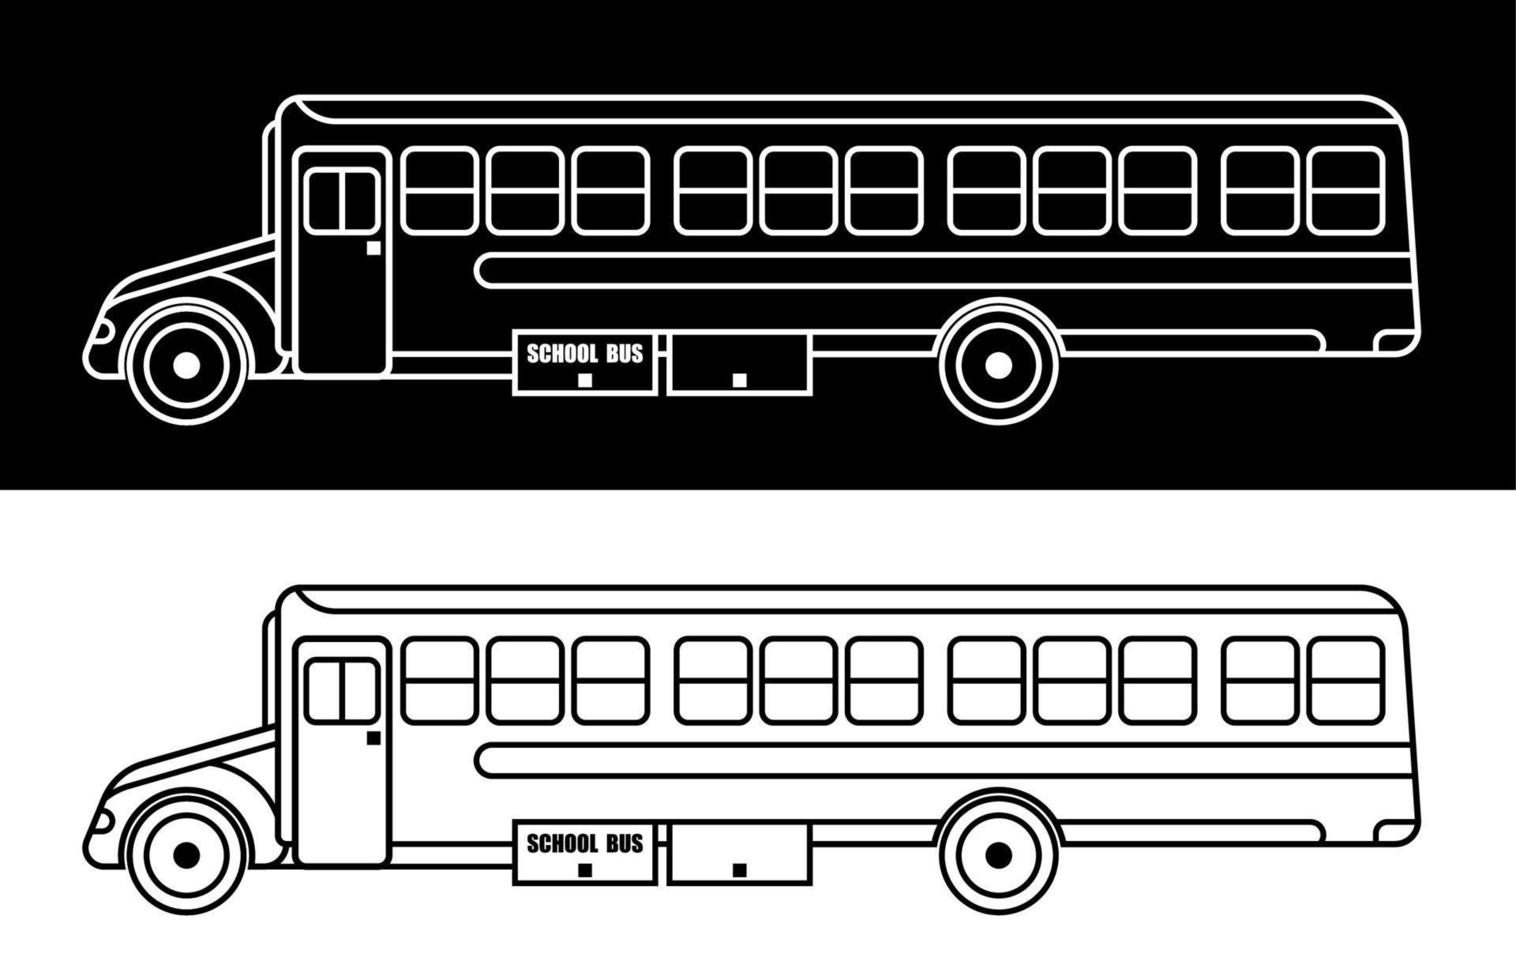 autobús escolar americano. el 1 de septiembre es el comienzo del año escolar. icono lineal. vectores en blanco y negro